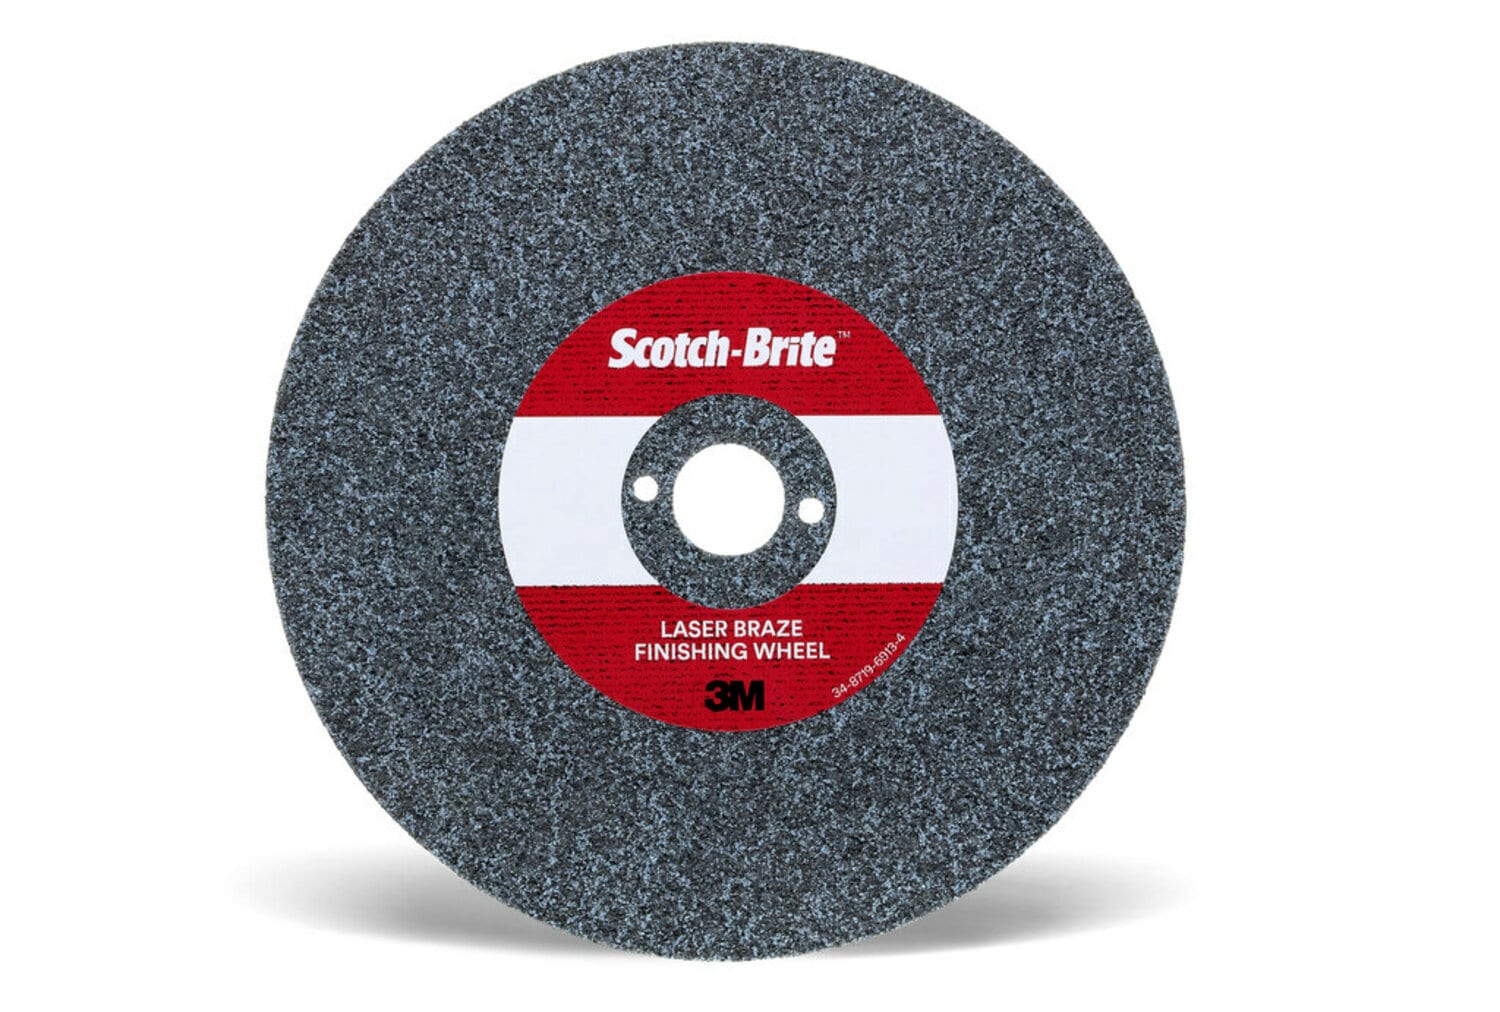 7100115937 - Scotch-Brite Laser Braze Finishing Wheel, 4 in x 3.2mm x 3/8 in, 20
ea/Case